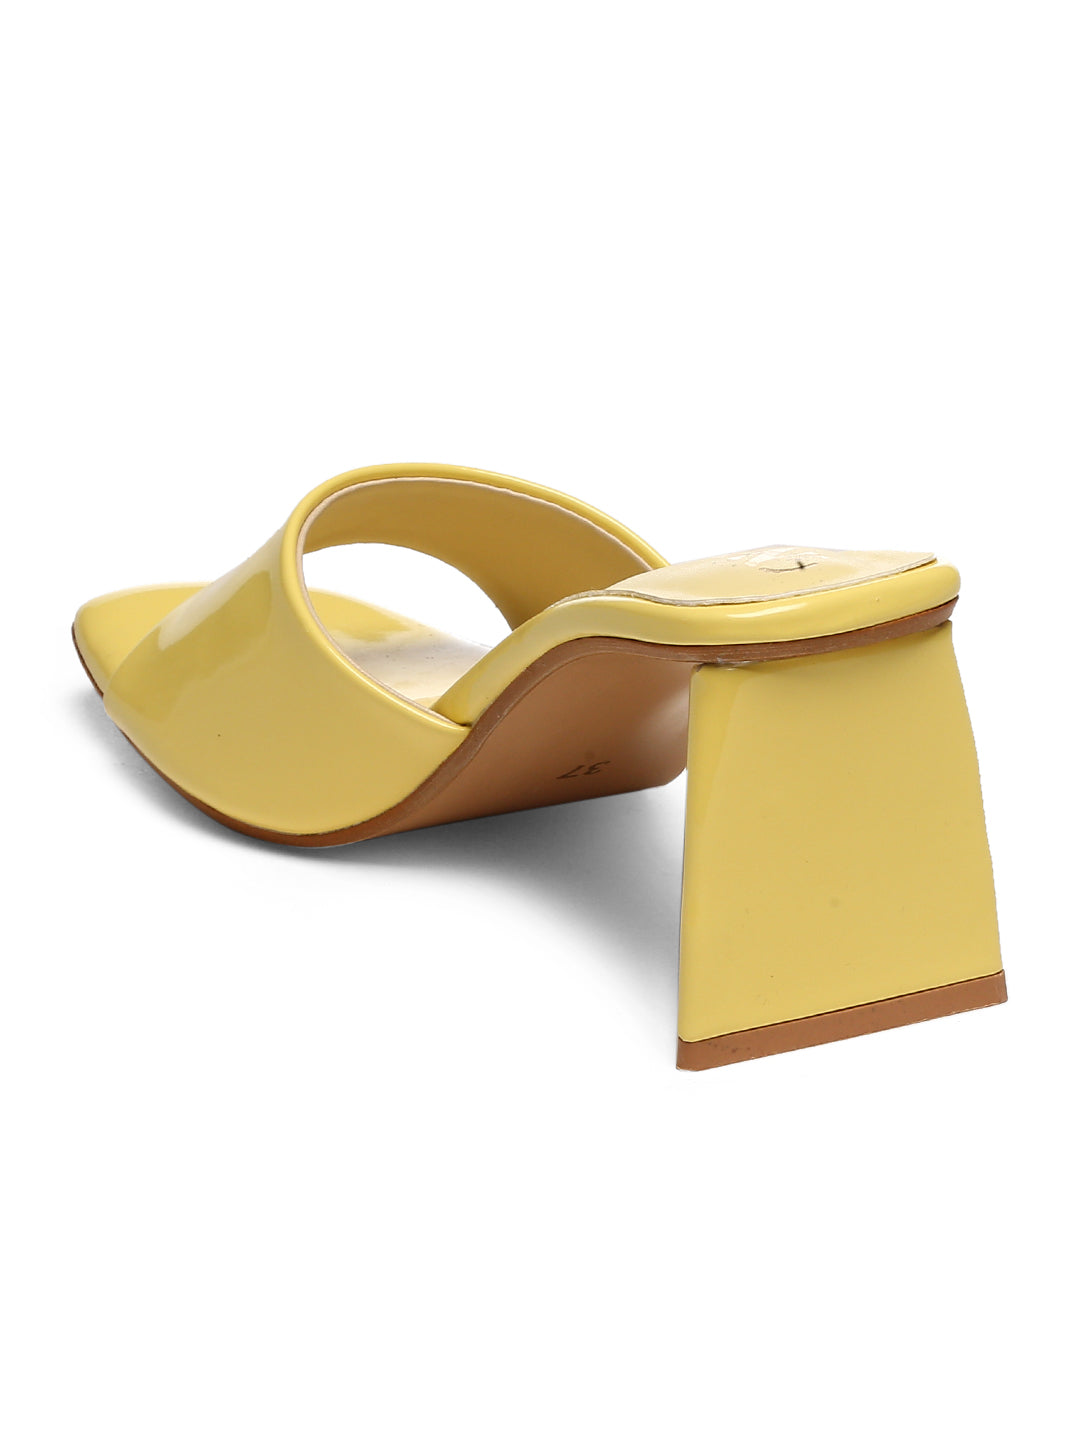 GNIST Yellow Chuncky Patent Block Heel